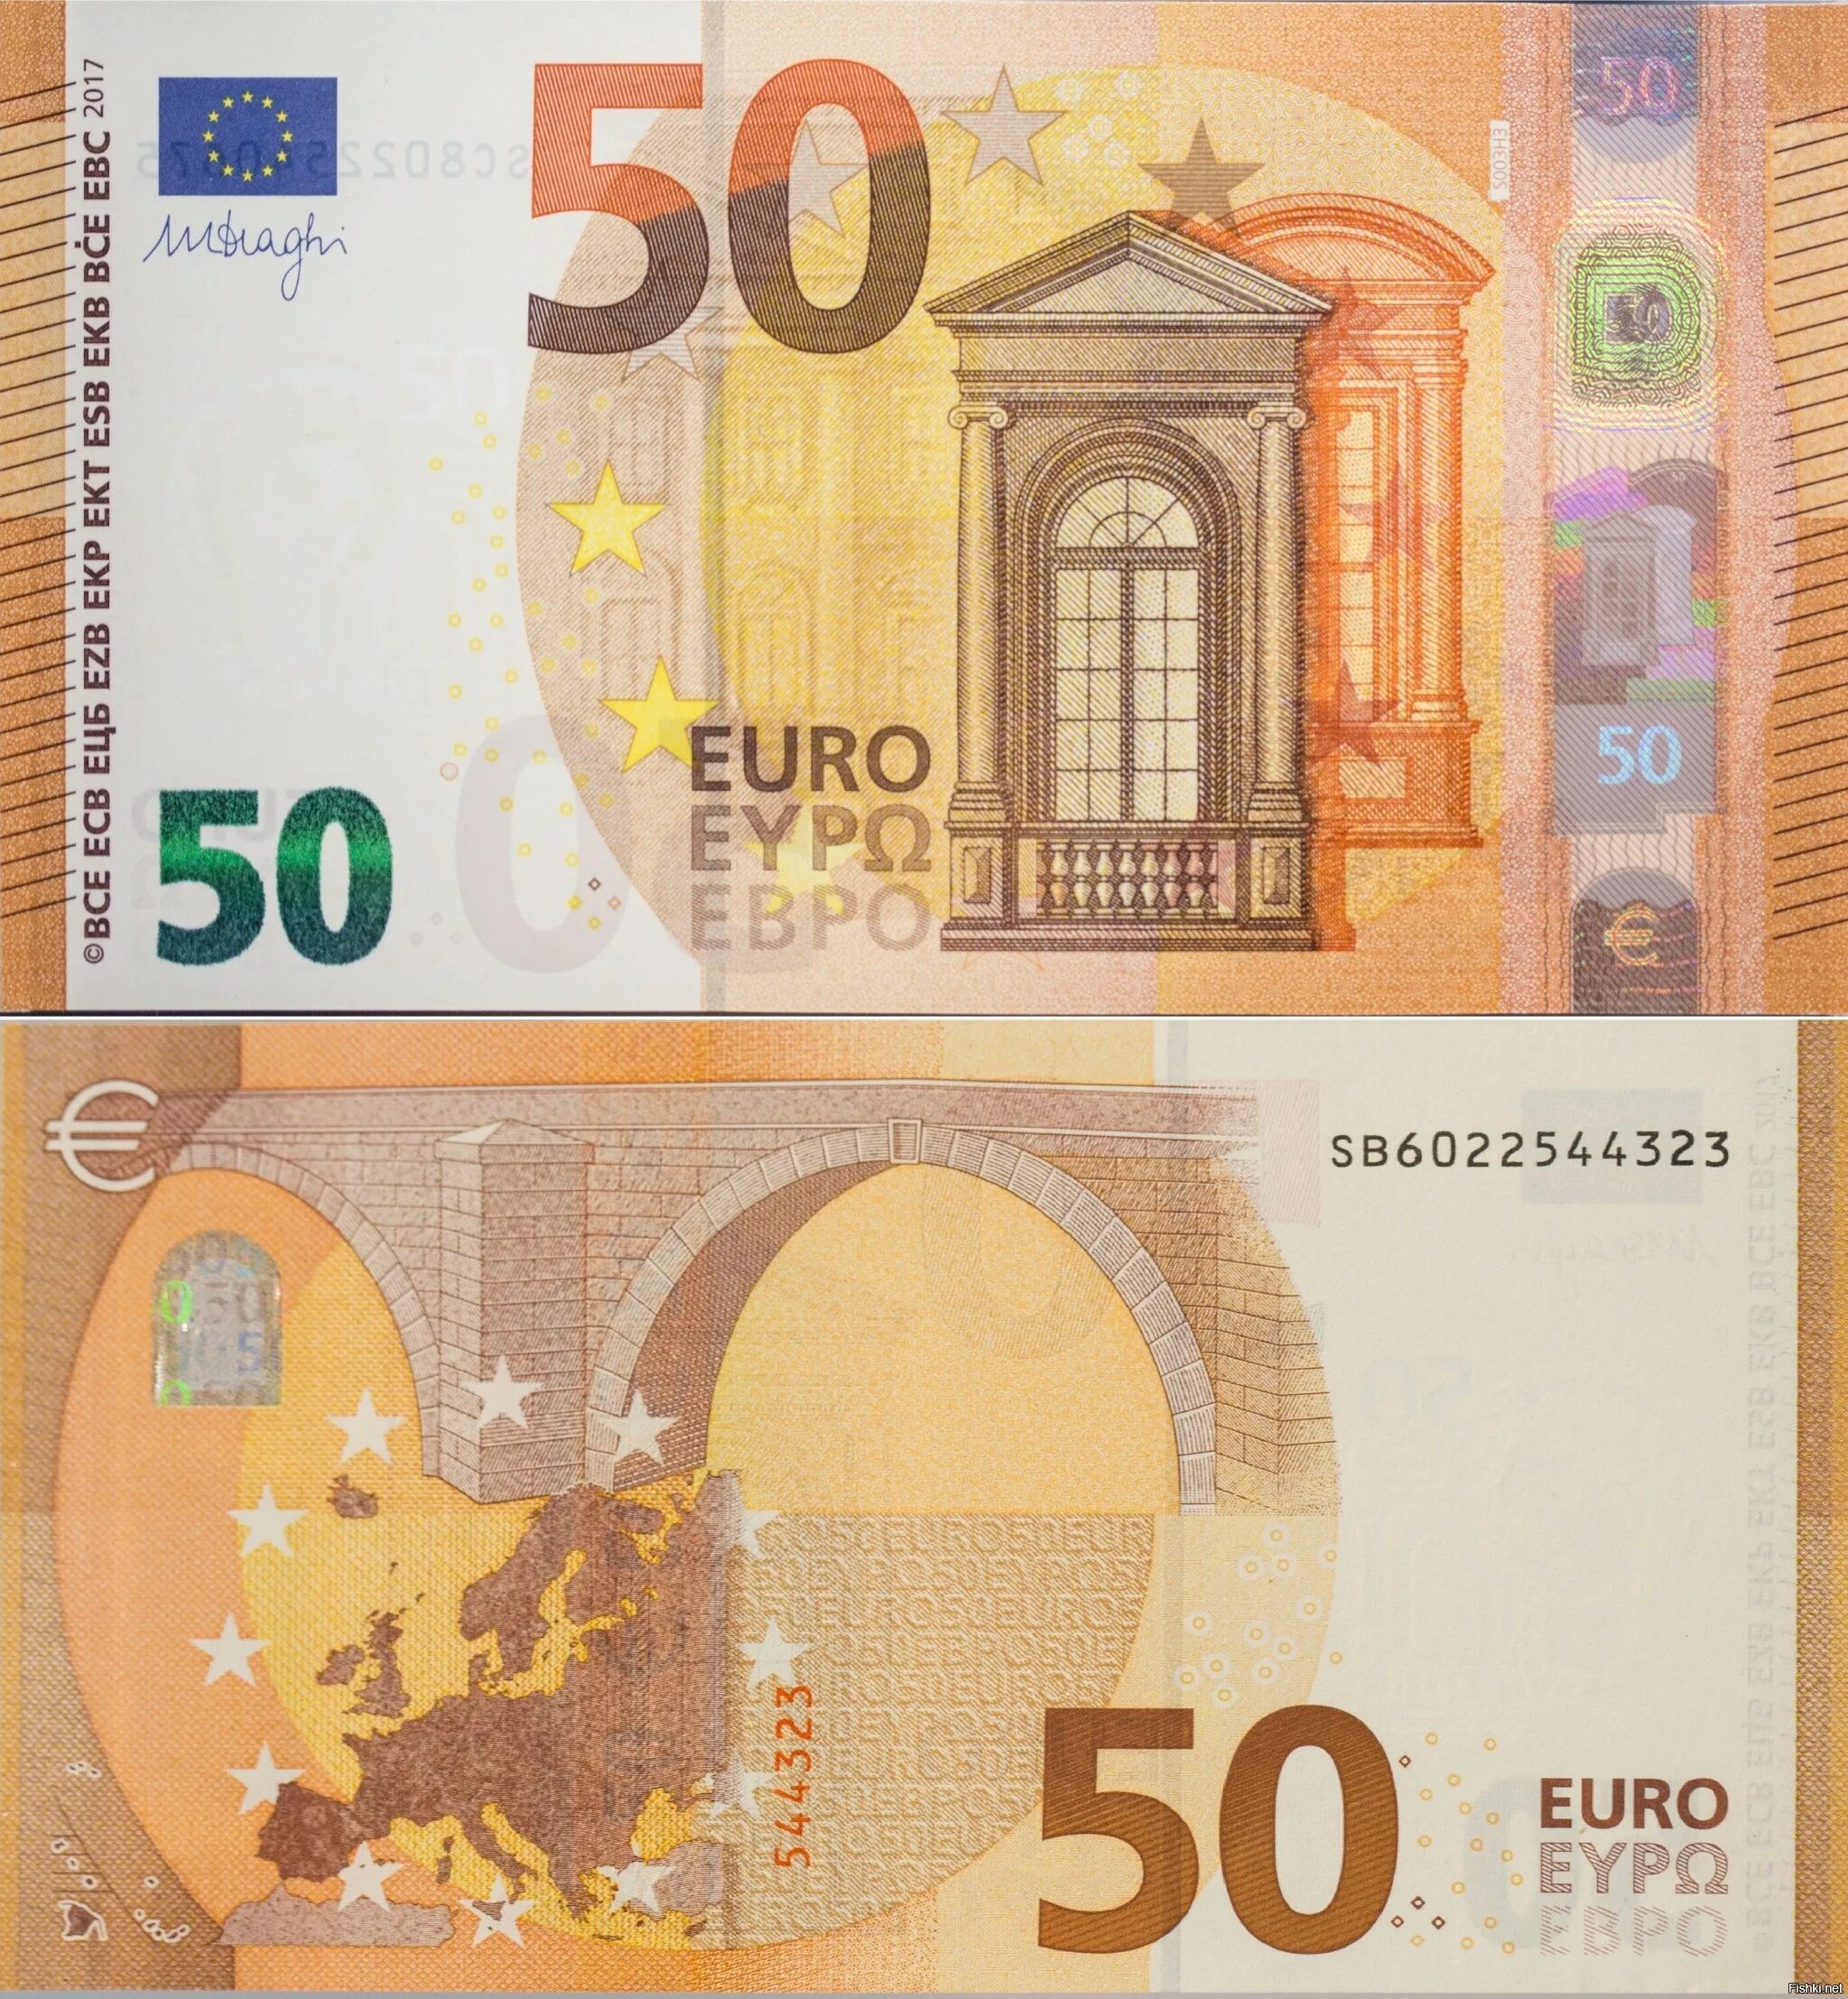 Пятьдесят евро. Банкноты 50 евро. Банкноты евро нового образца 50 евро. 50 Евро купюра 2017. Как выглядит банкнота 50 евро.